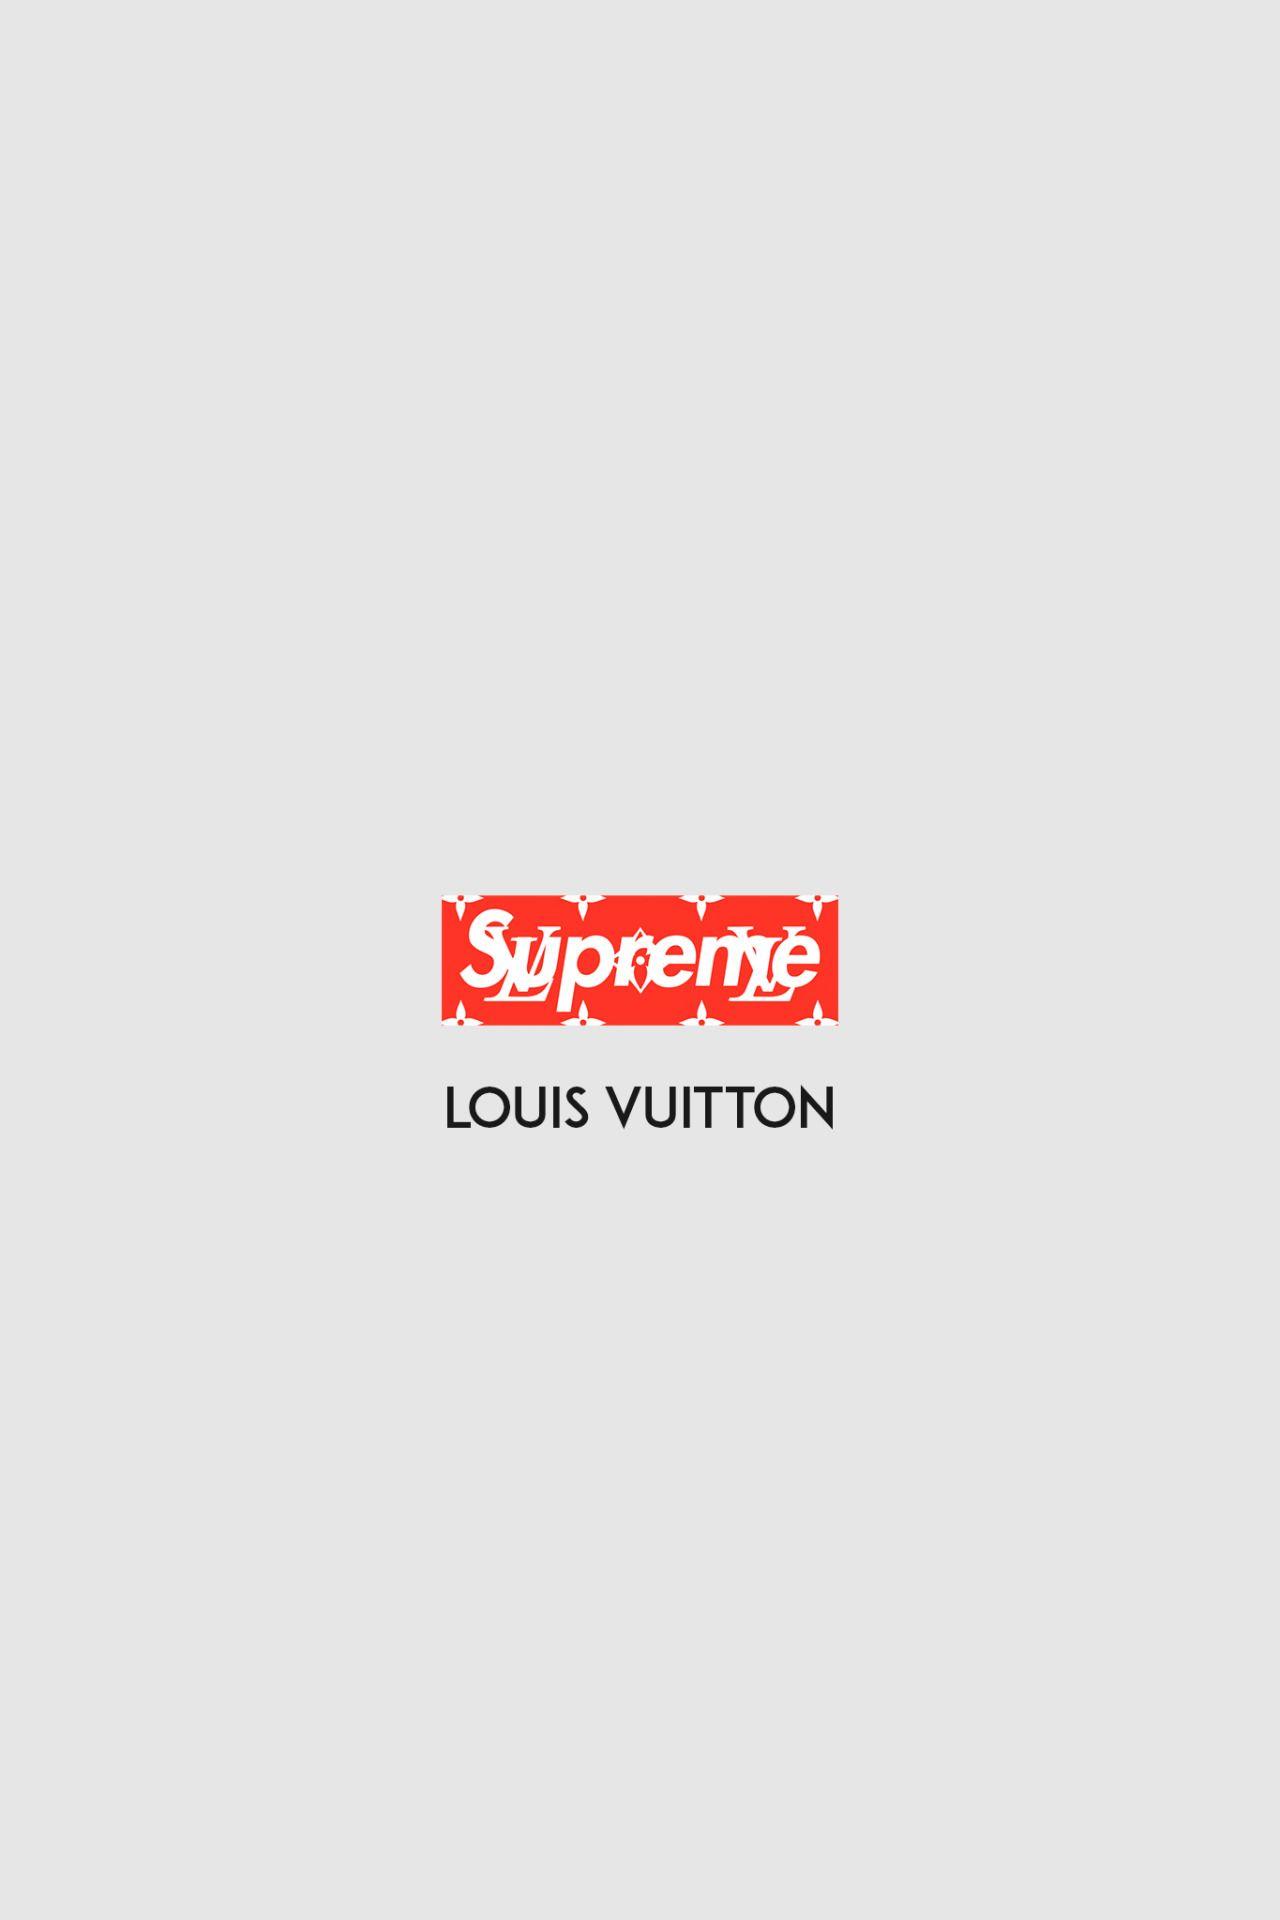 Loui Supreme Logo - Supreme Louis Vuitton Wallpaper